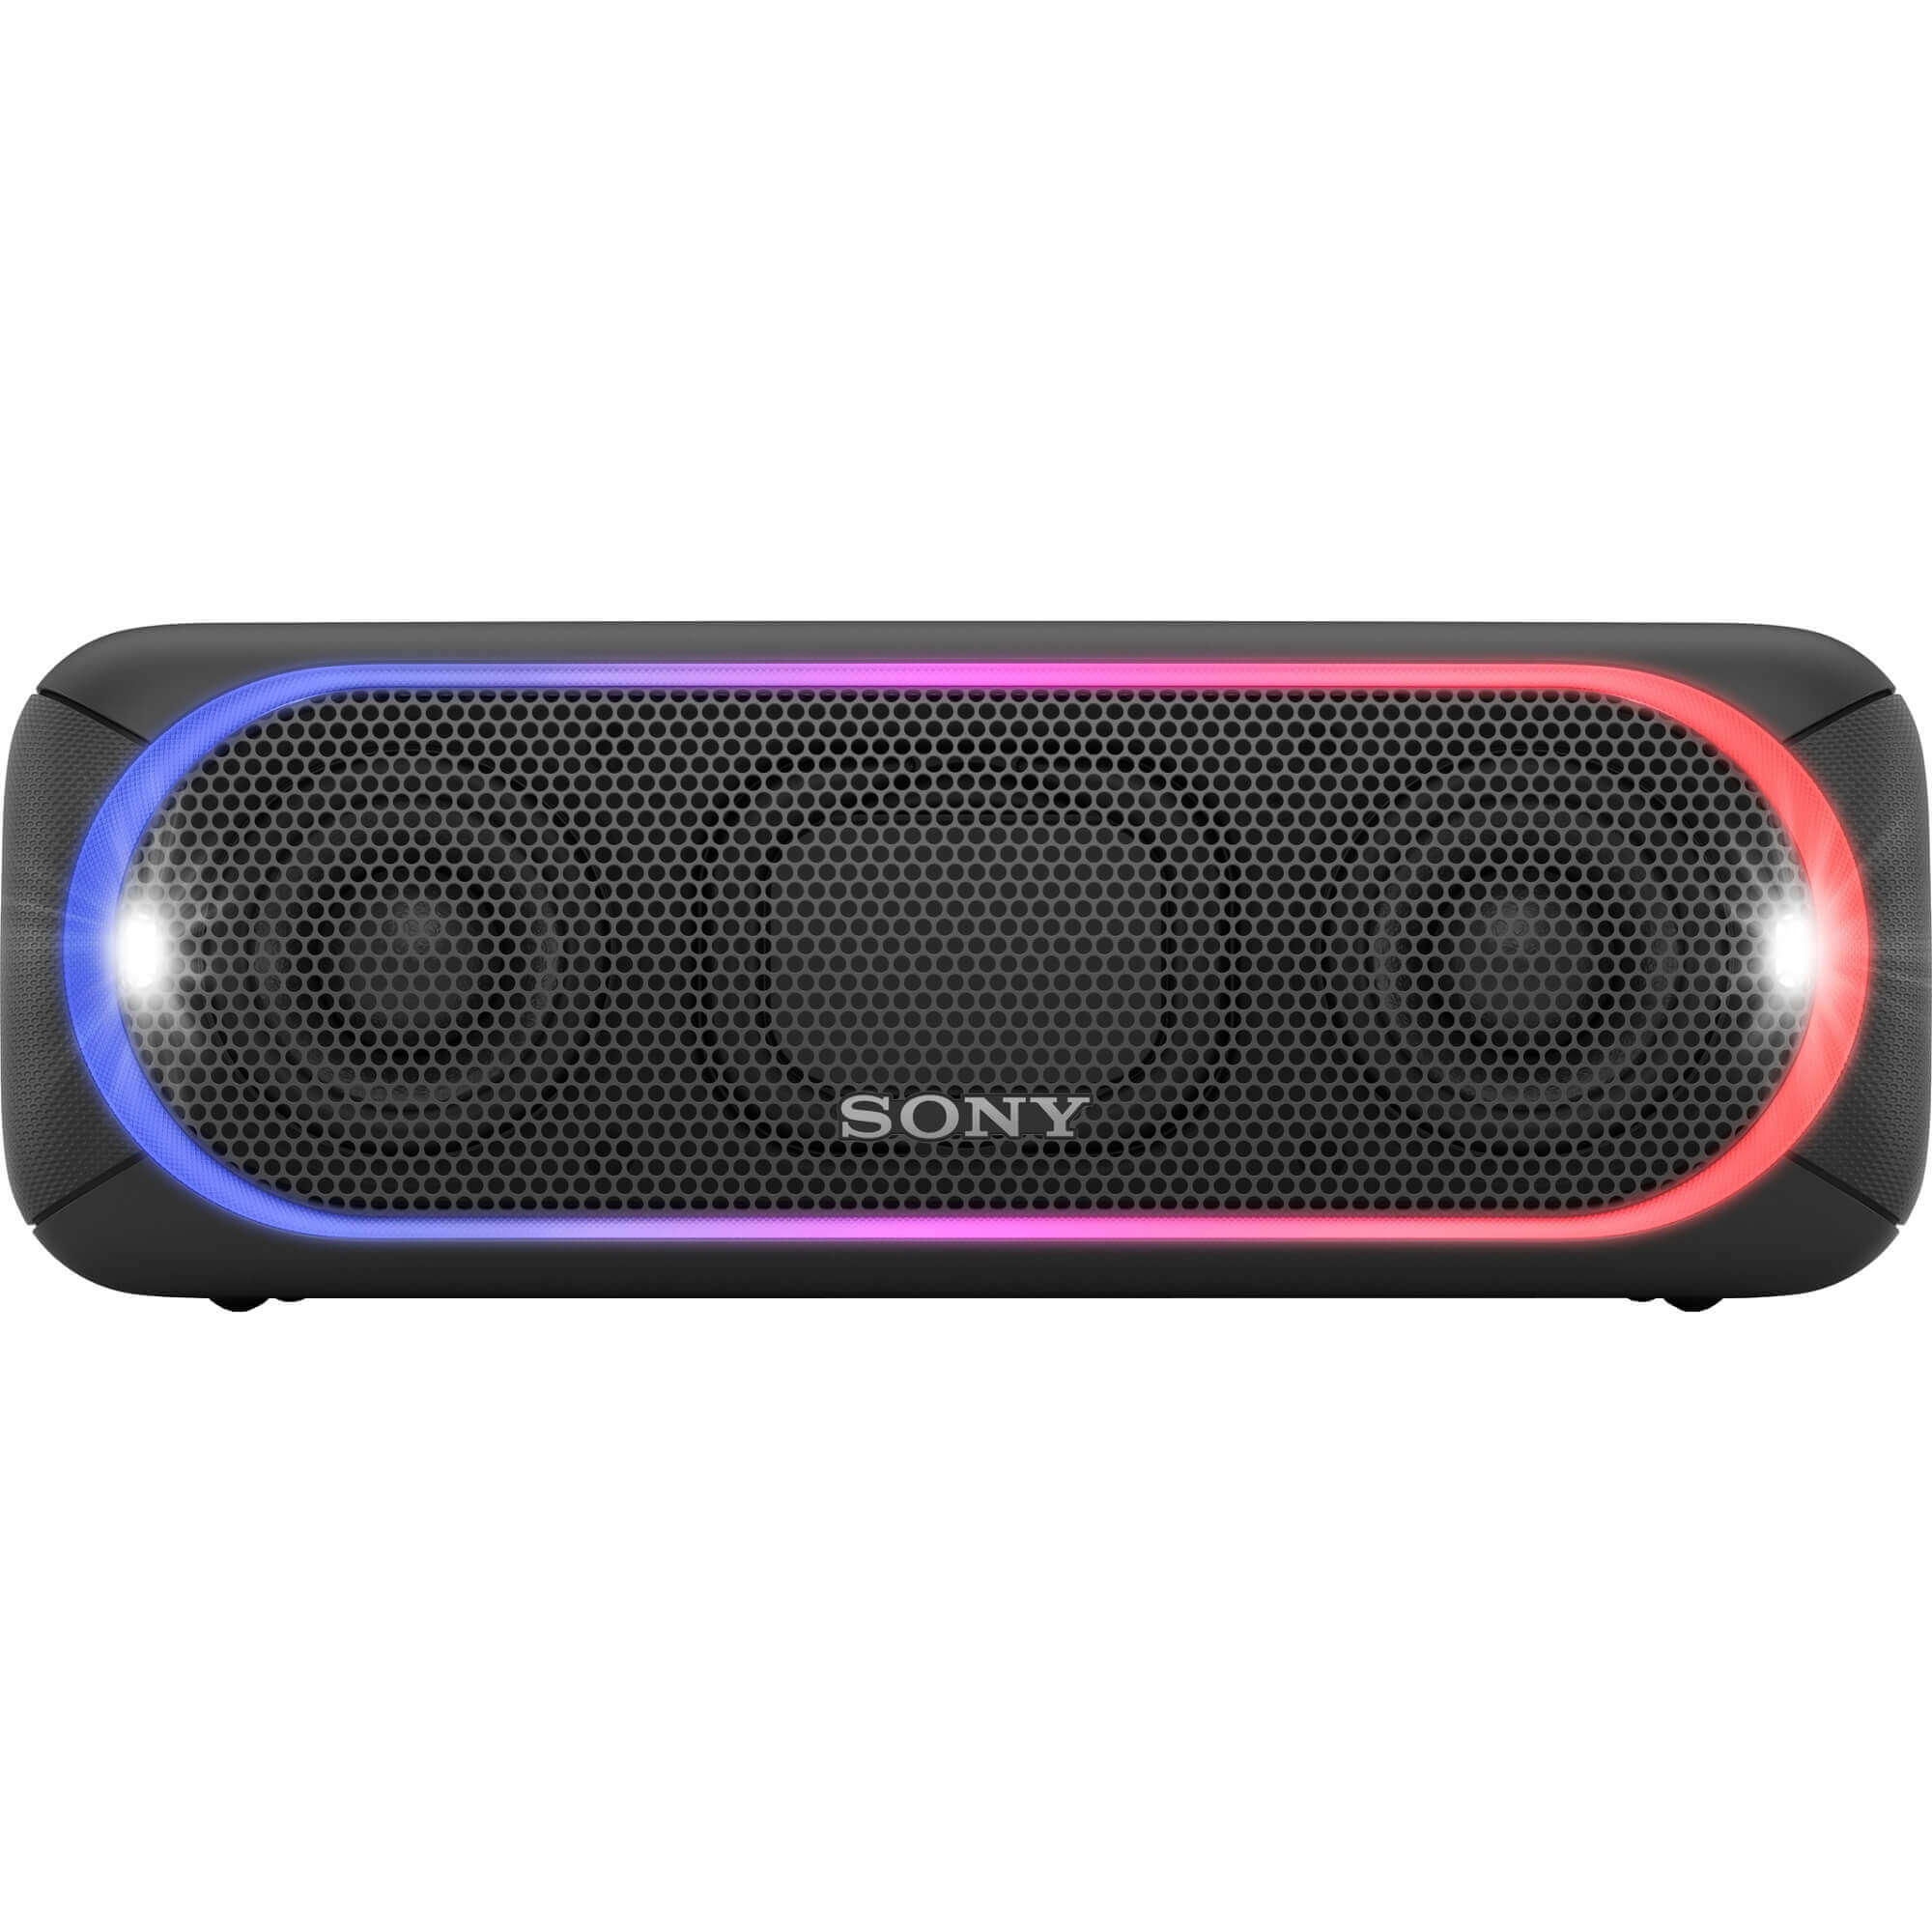  Boxa portabila Sony SRSXB30B.EU8, Bluetooth, Negru 